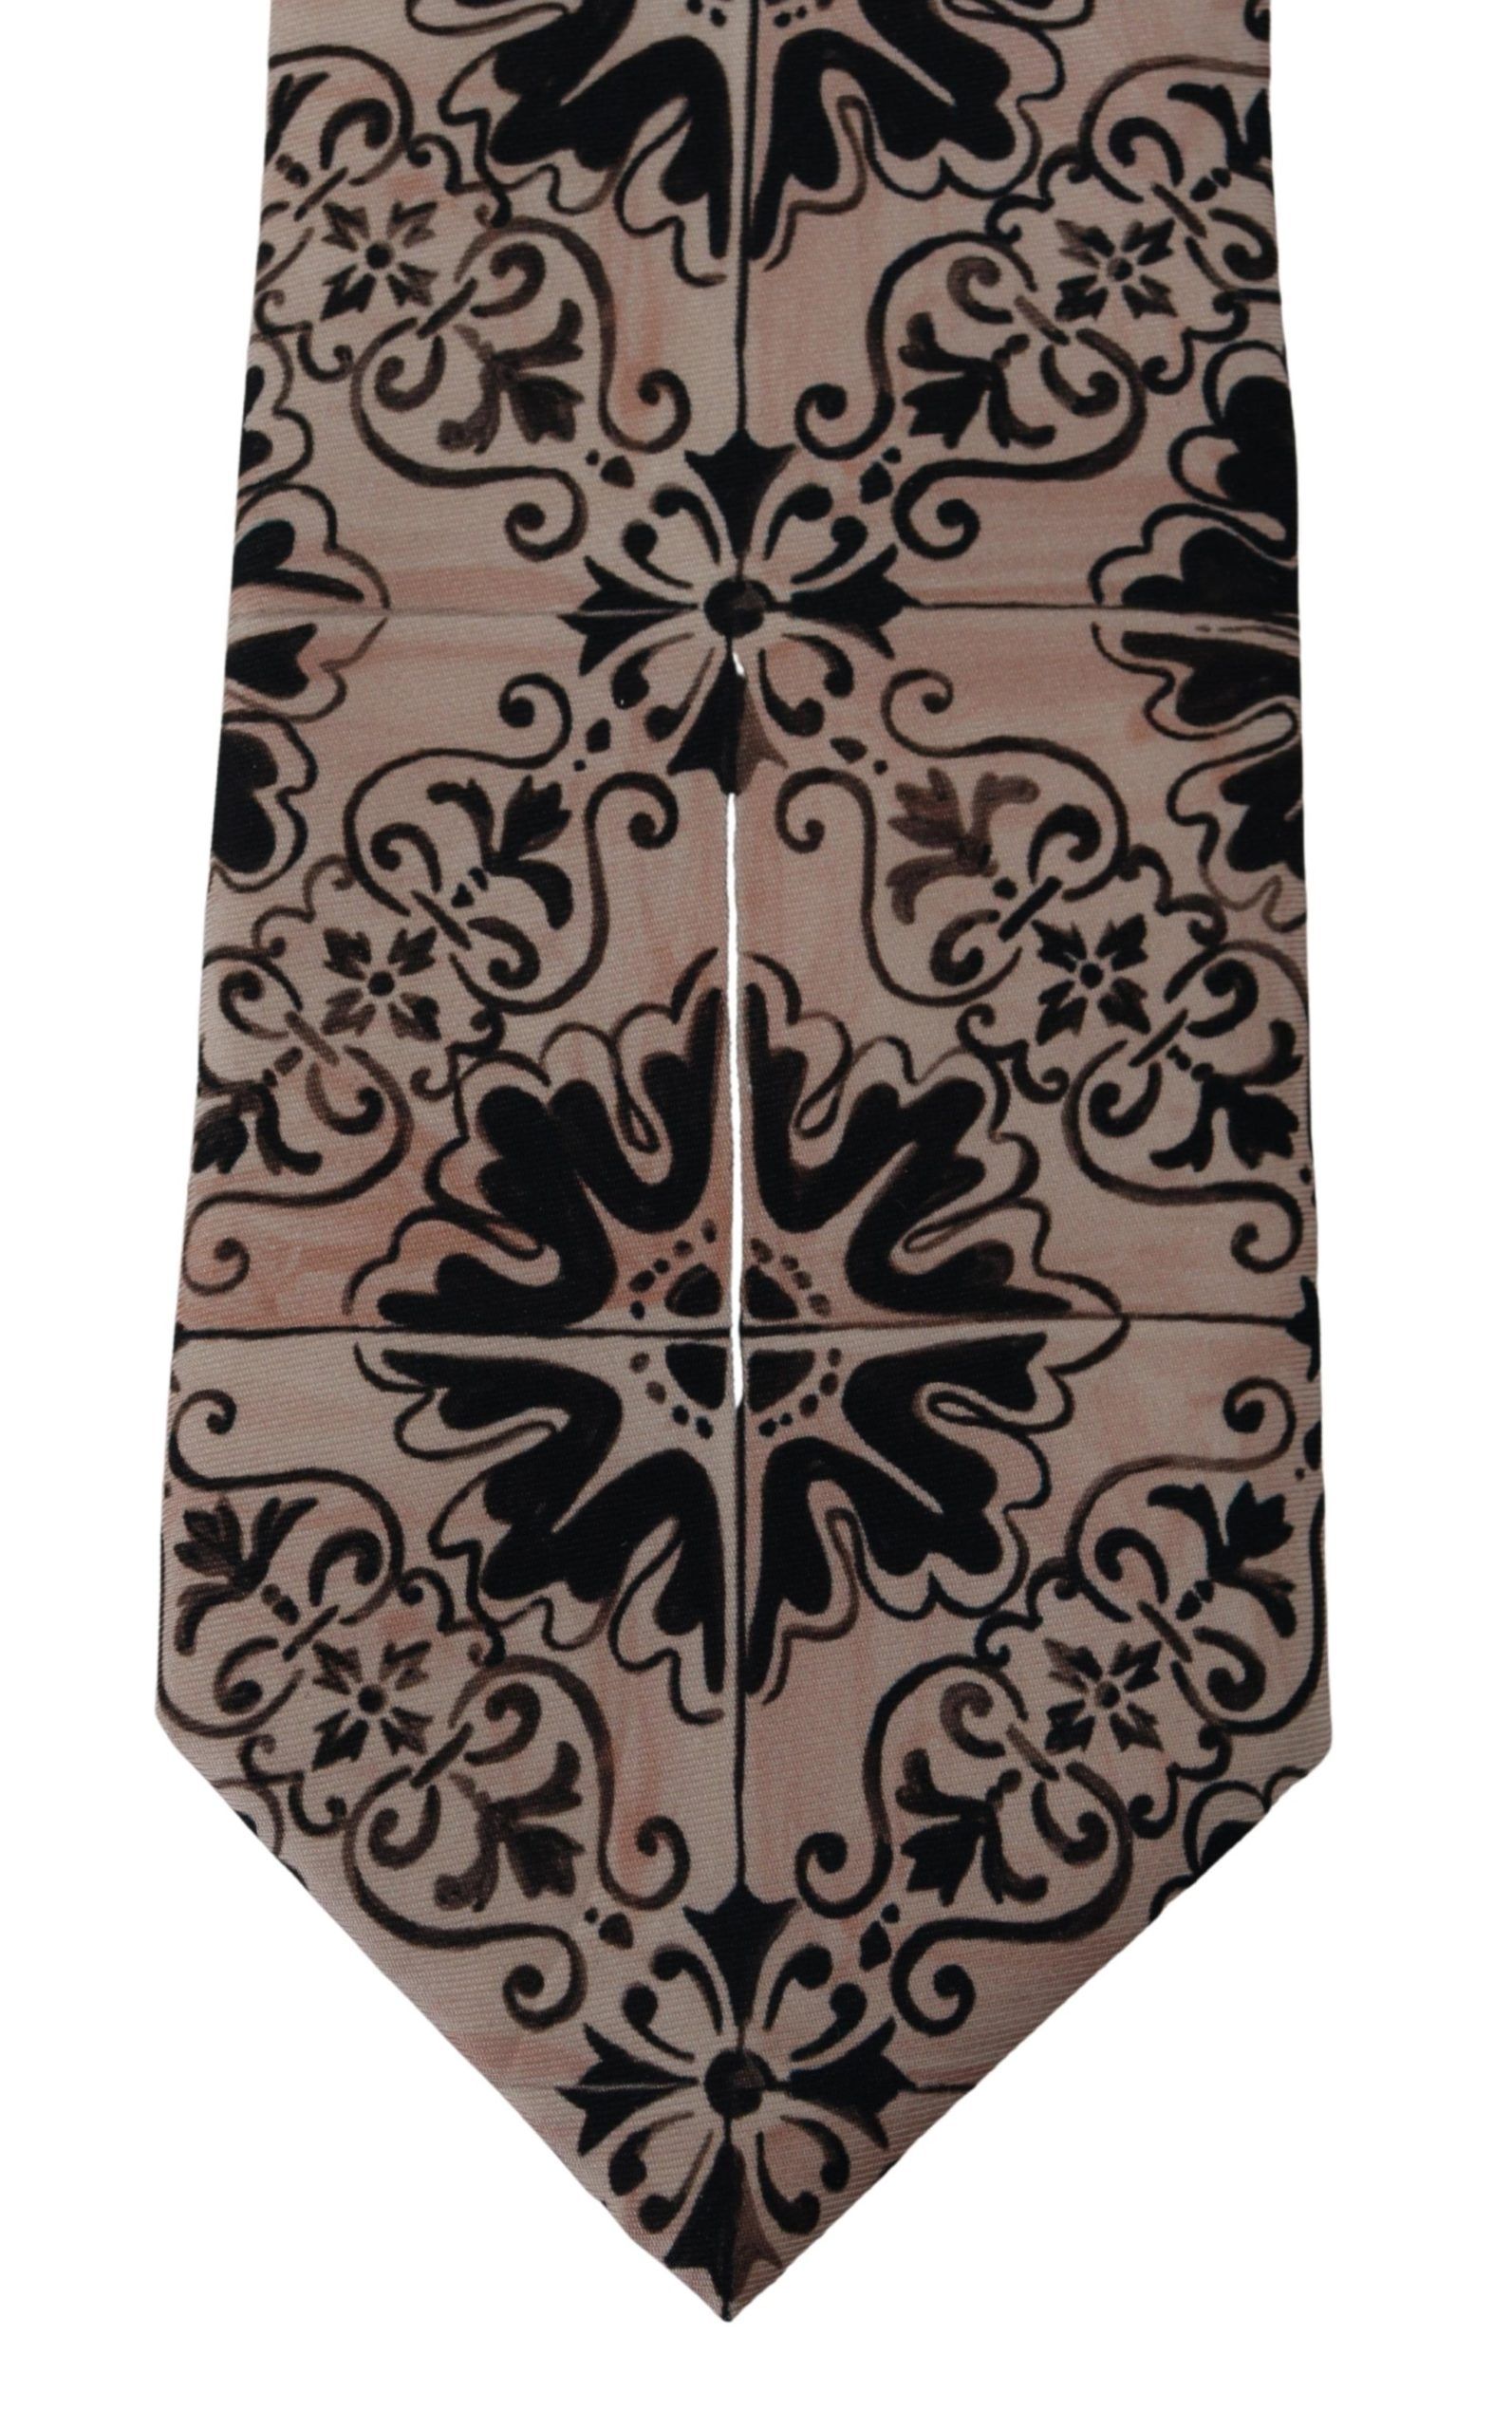 Stunning Silk Gentleman's Tie in Rich Brown